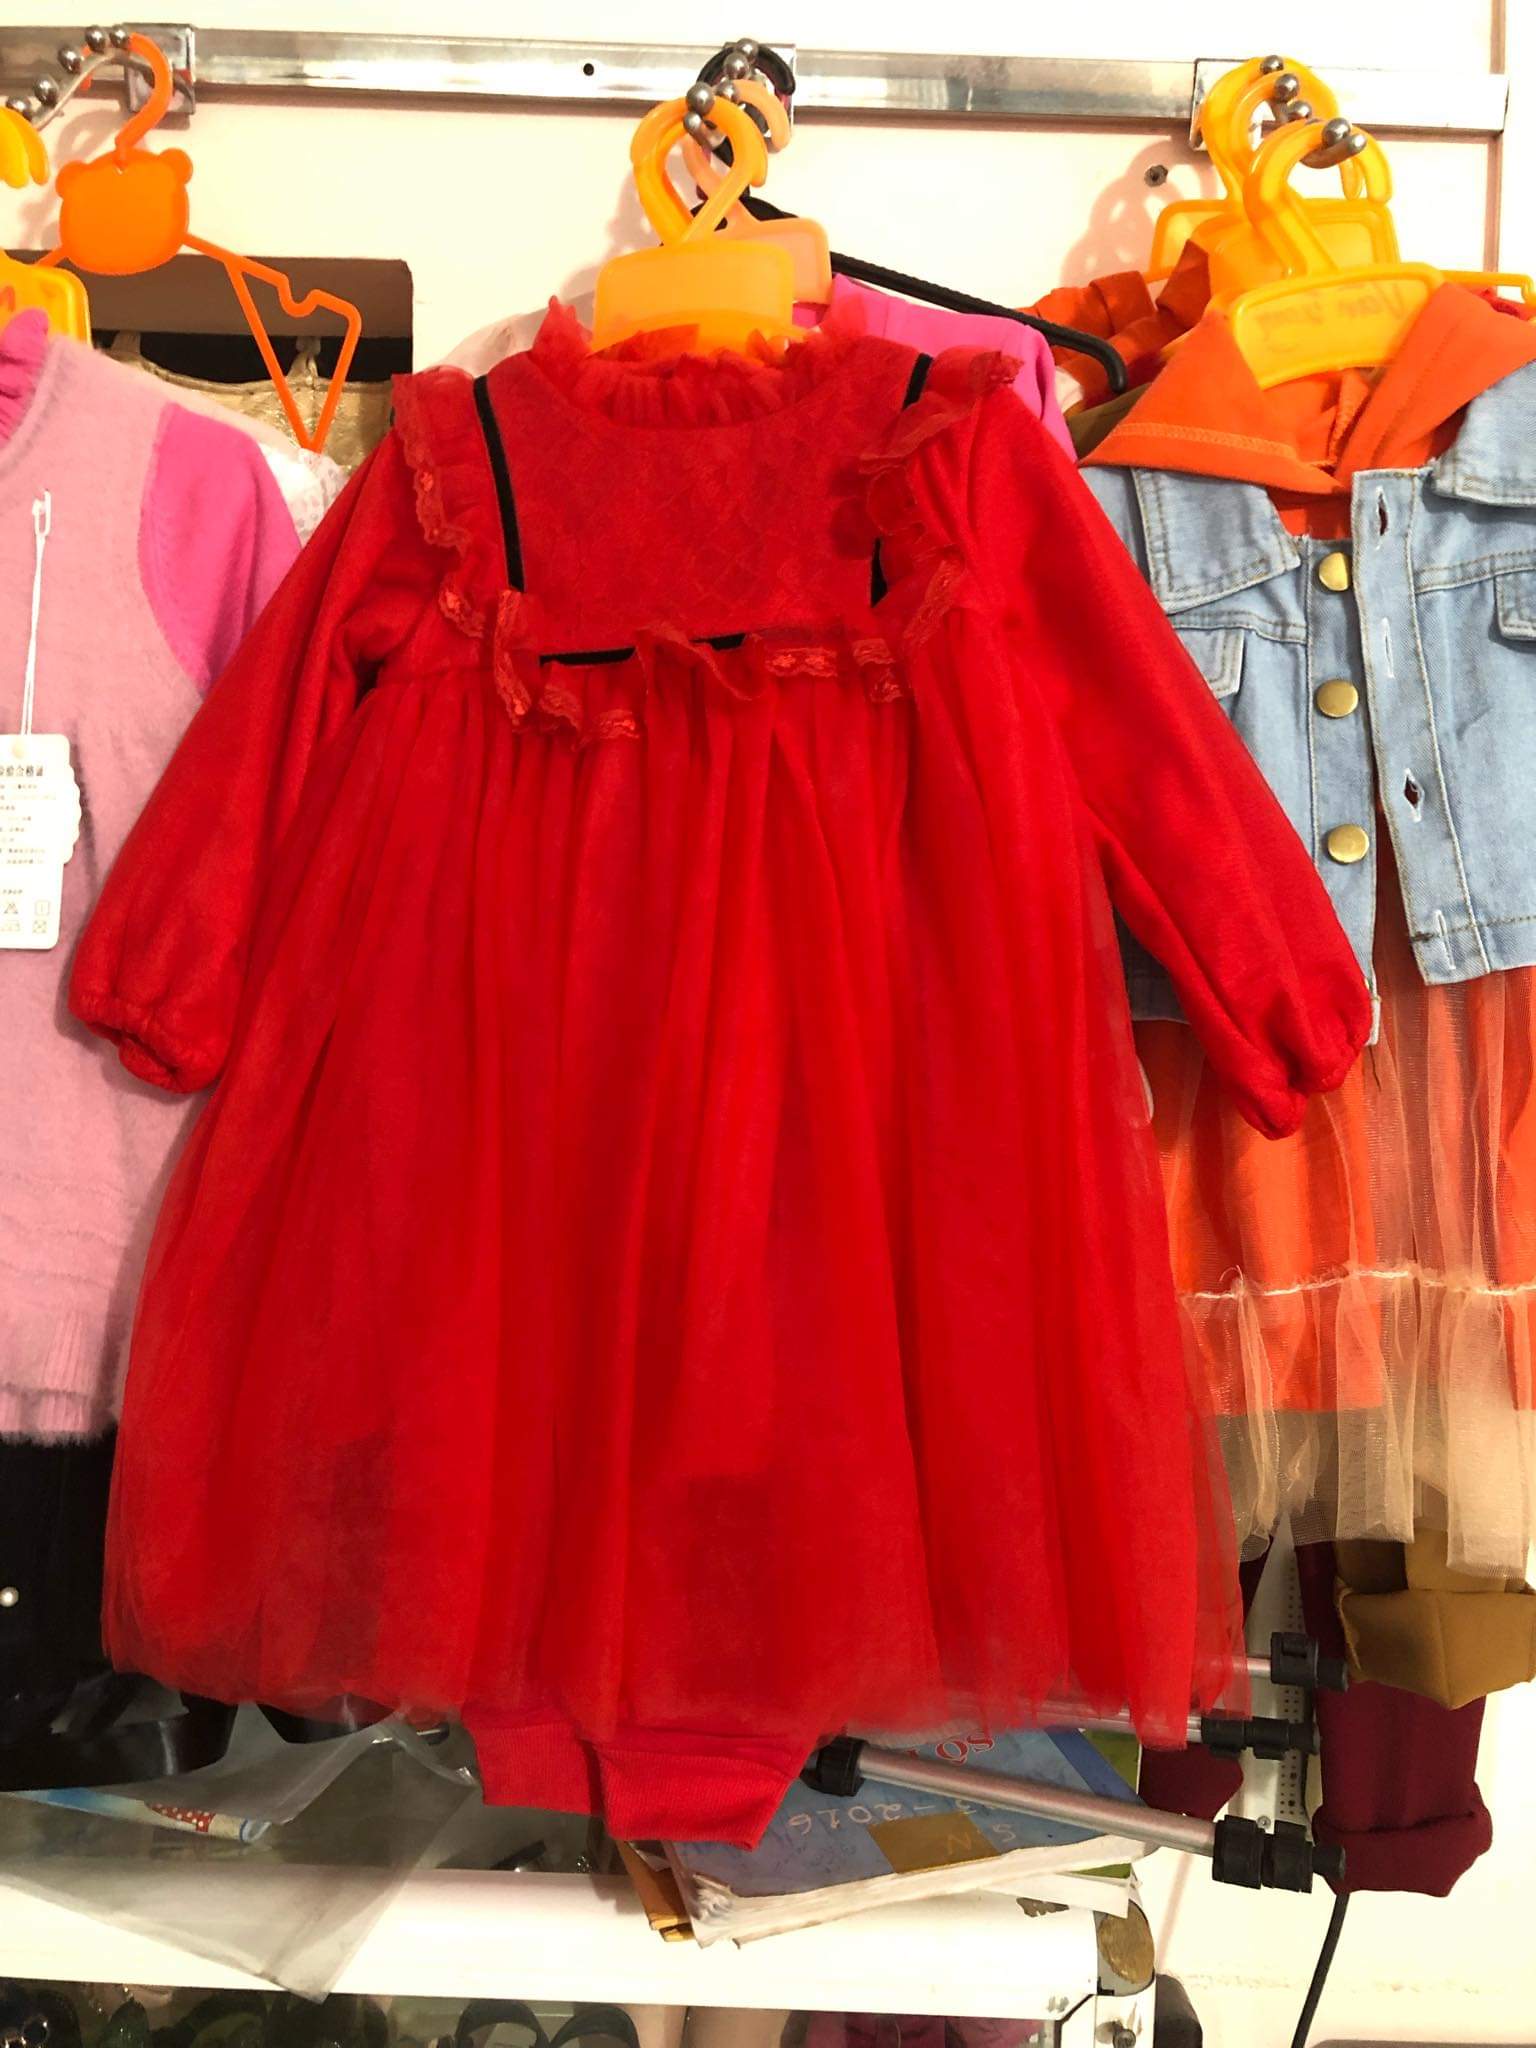 váy đỏ.jpg